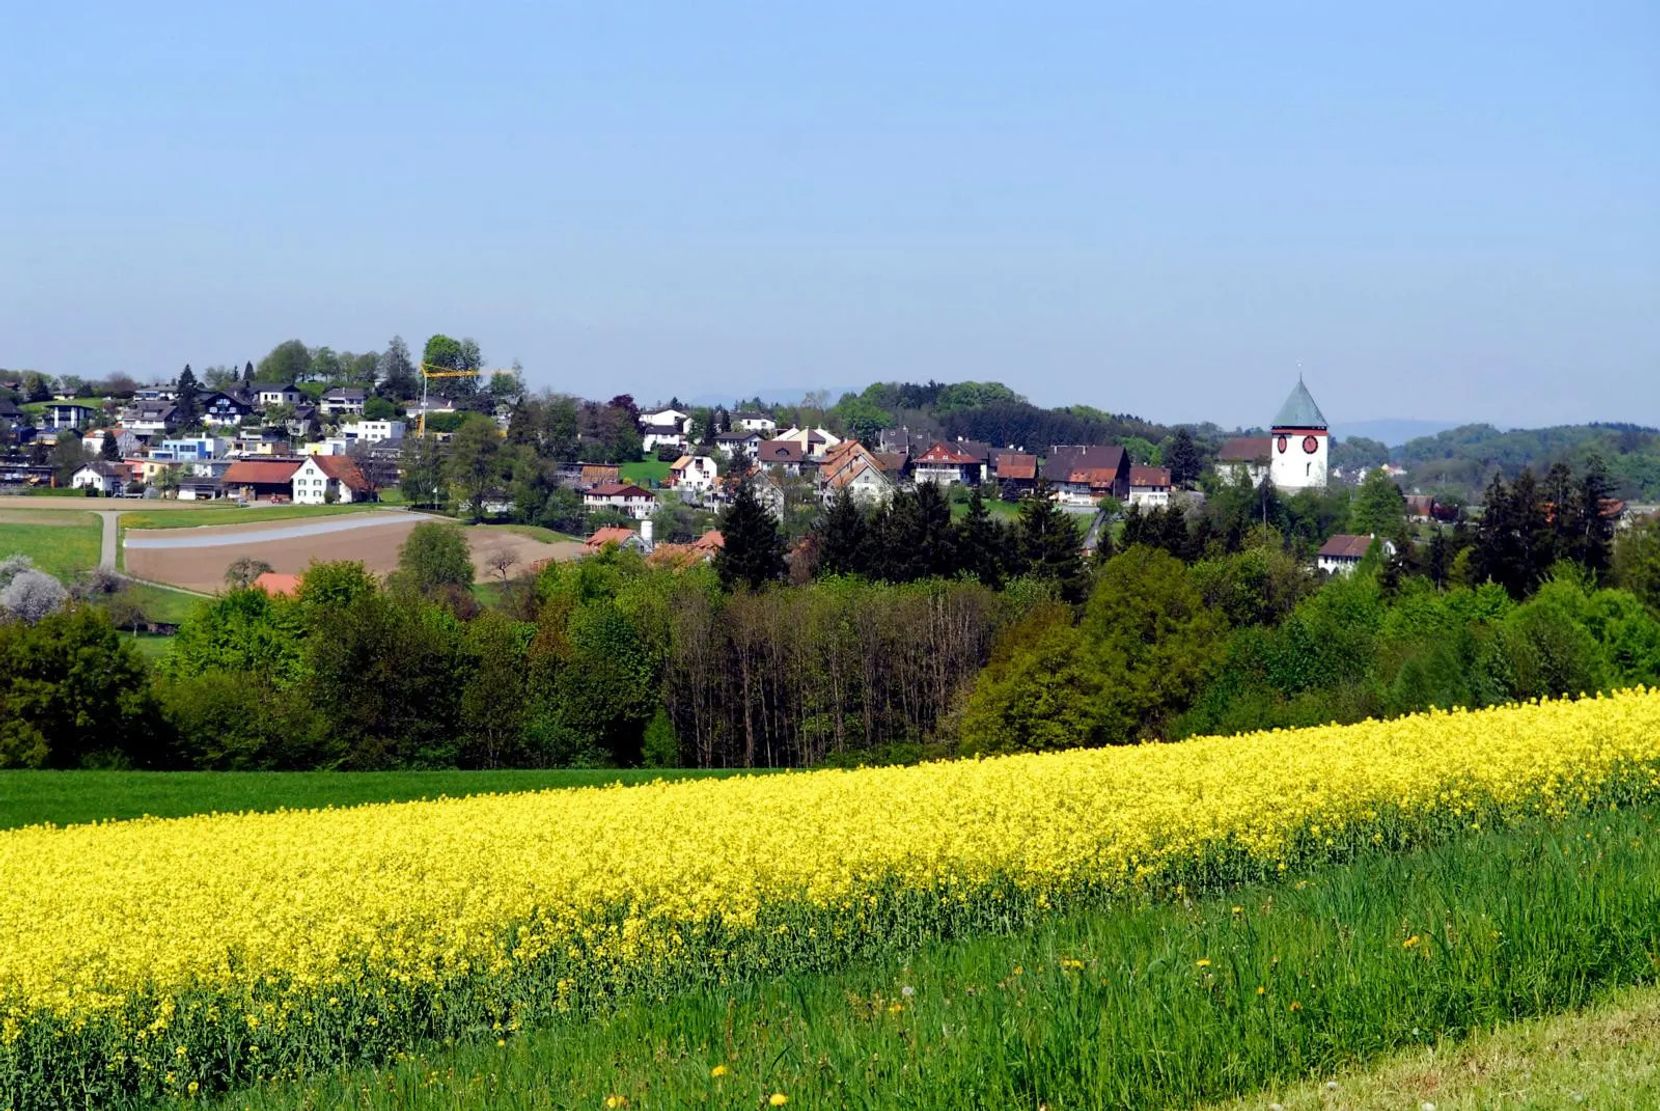 Auf dem Bild ist ein Rapsfeld und dahinter ein Dorf zu sehen.